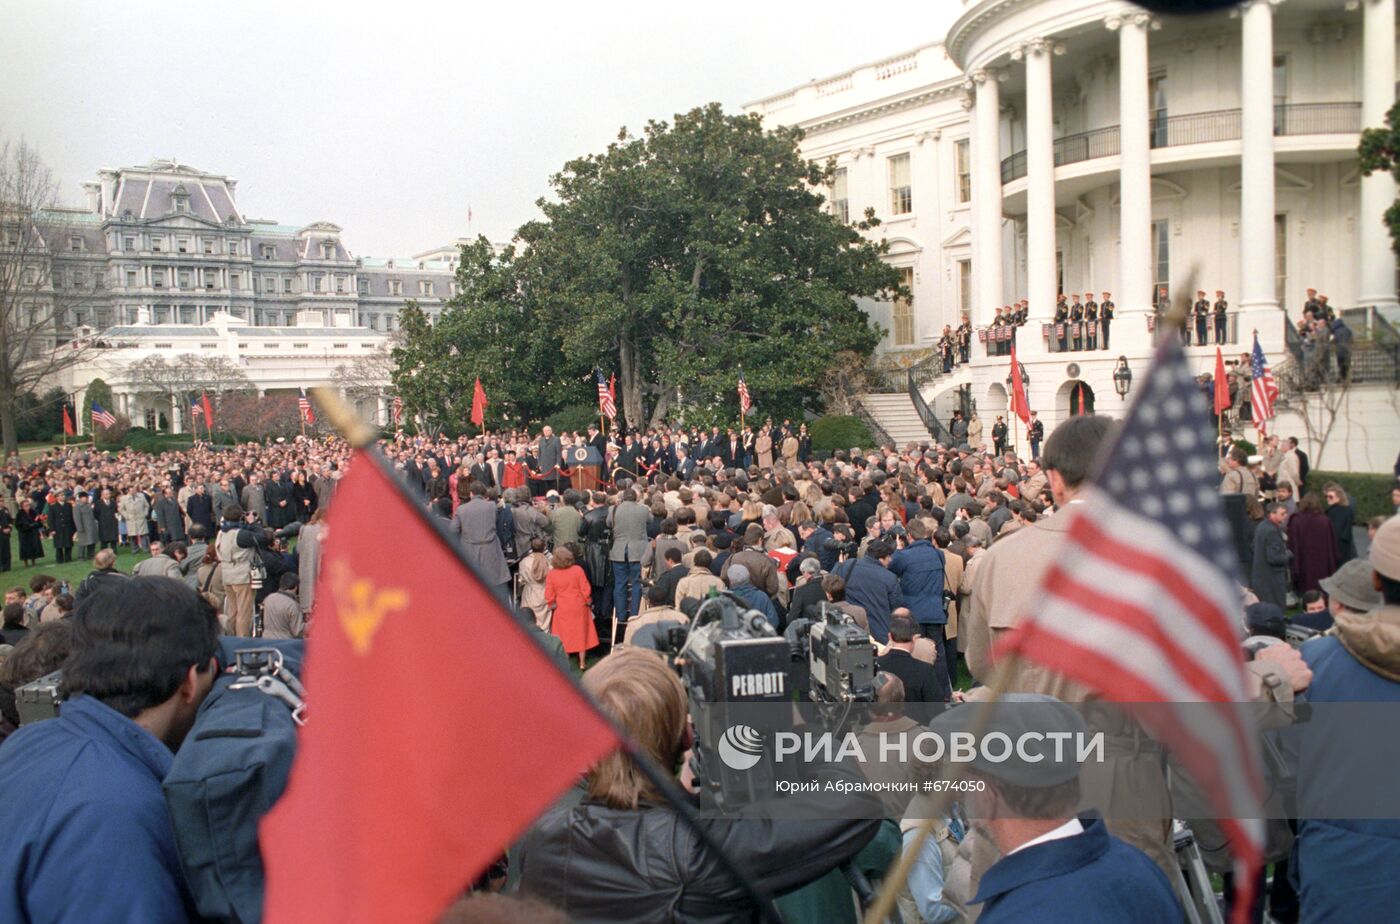 Официальный визит Михаила Горбачева в США